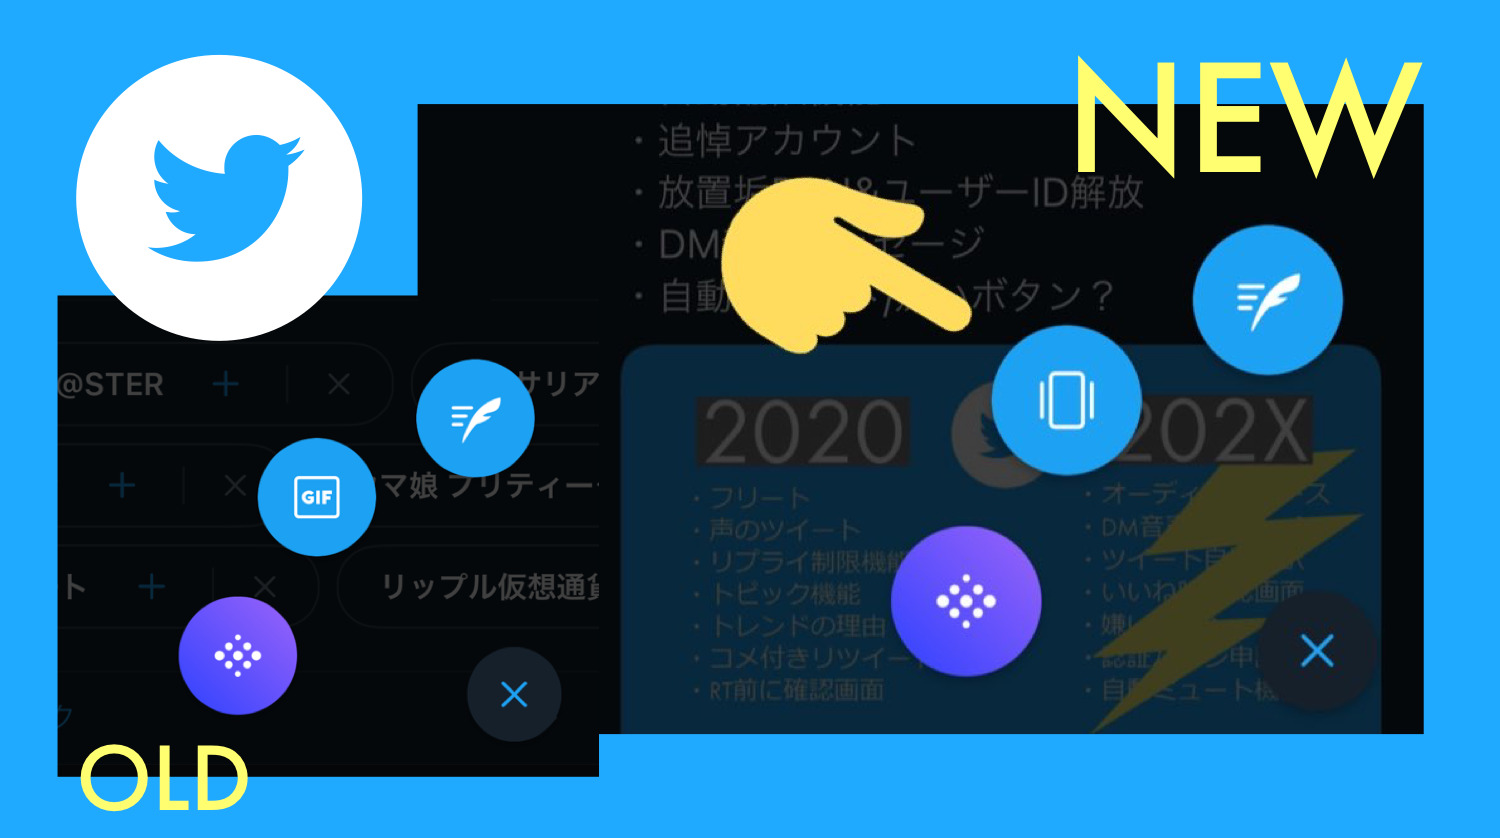 ツイートボタンからフリート投稿可能に Twitter新機能アップデート最新ニュース 21年5月 Koukichi T